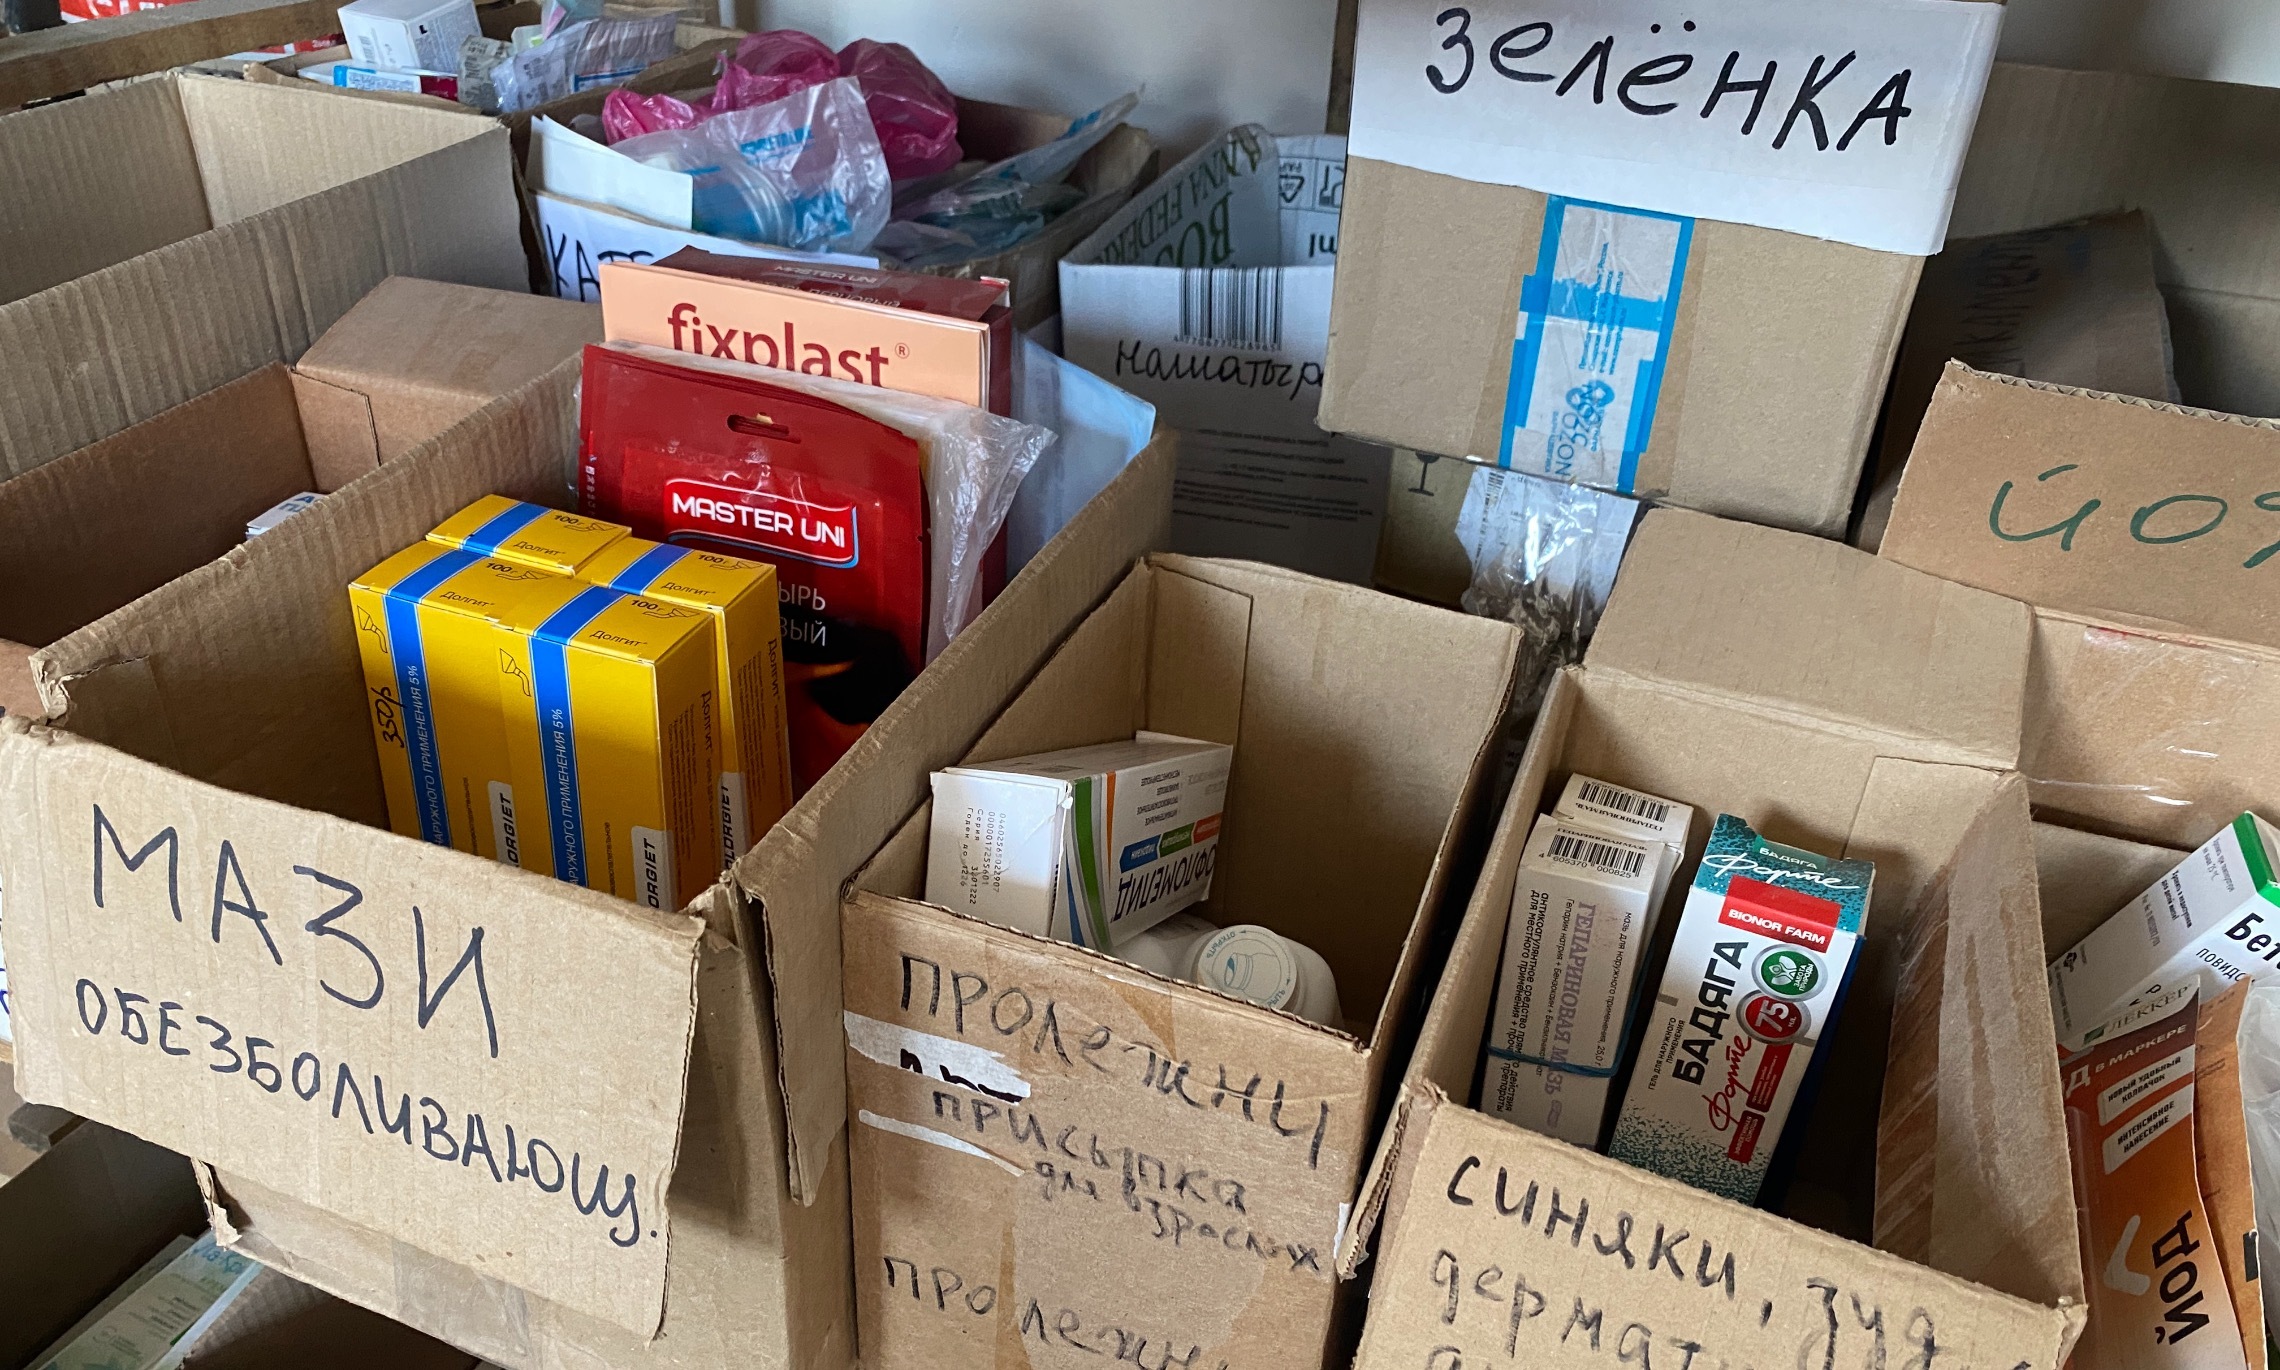 Медикаменты рассортированы по коробкам - так удобнее собирать комплекты по запросам местных жителей